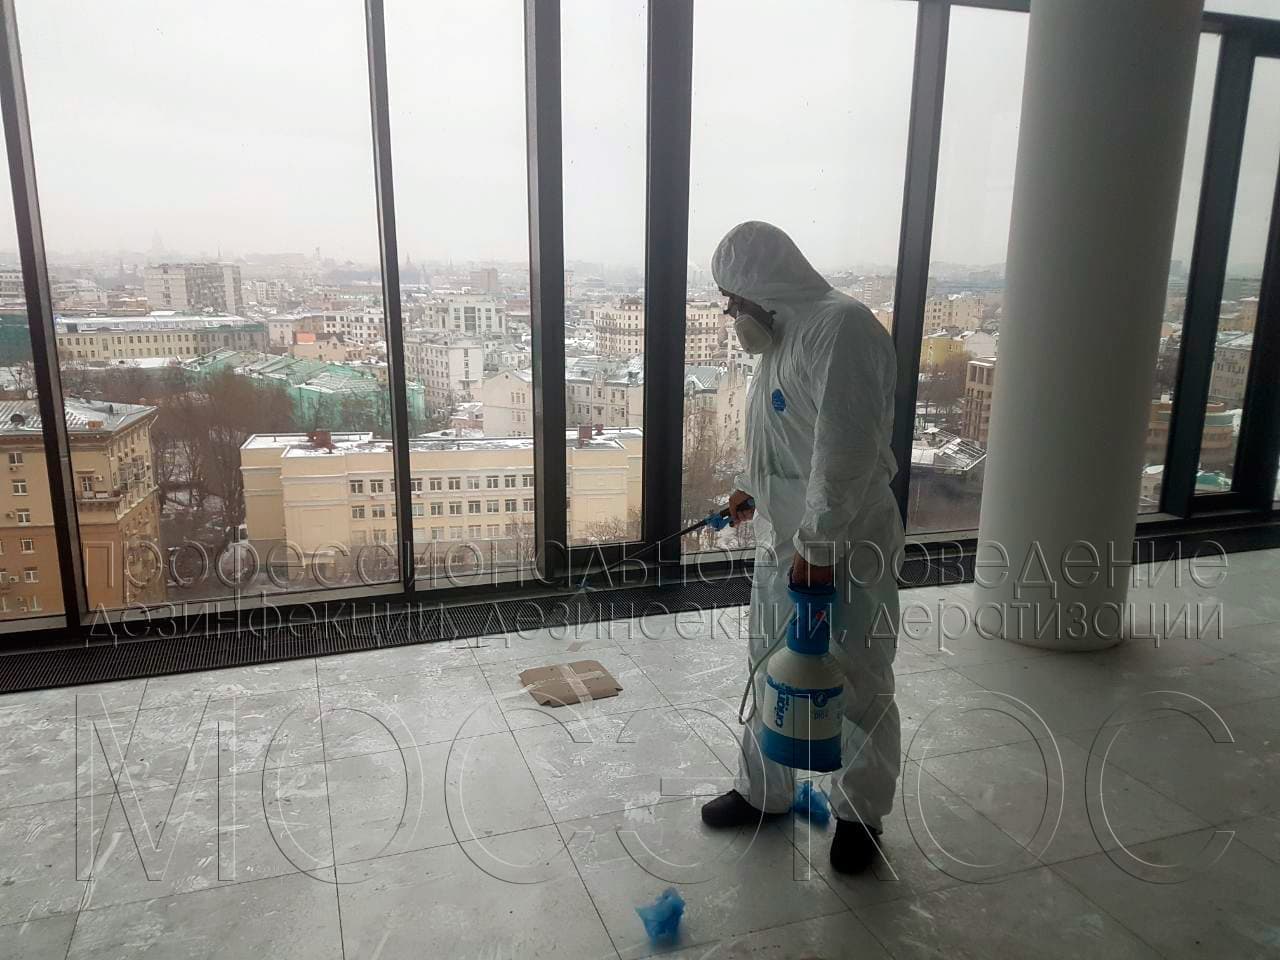 Обработка от тараканов в квартире в Пушкино